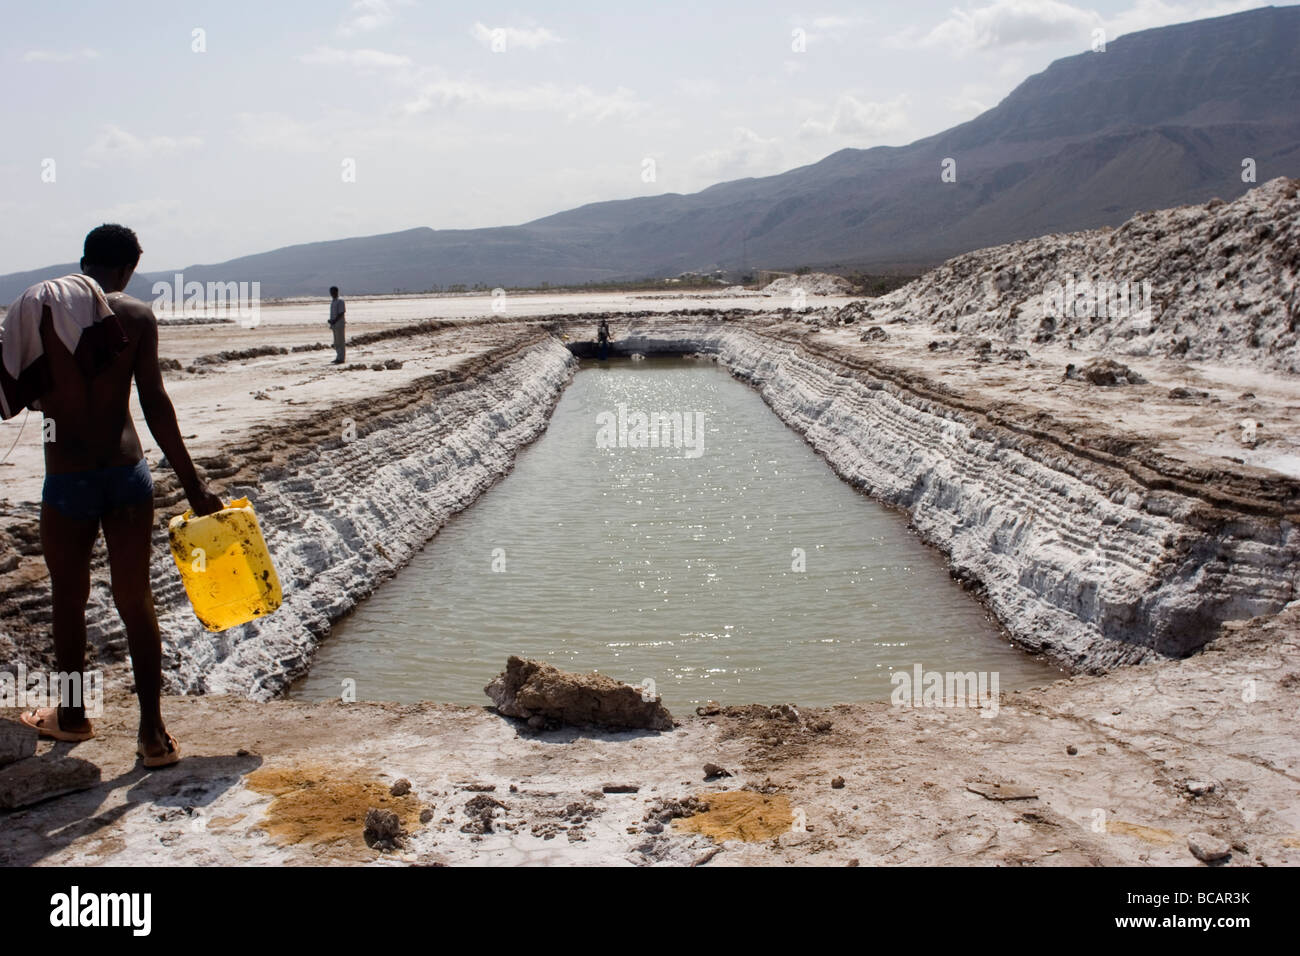 Elidar, Afar region, salt flats near Eritrean border in Ethiopia Stock Photo